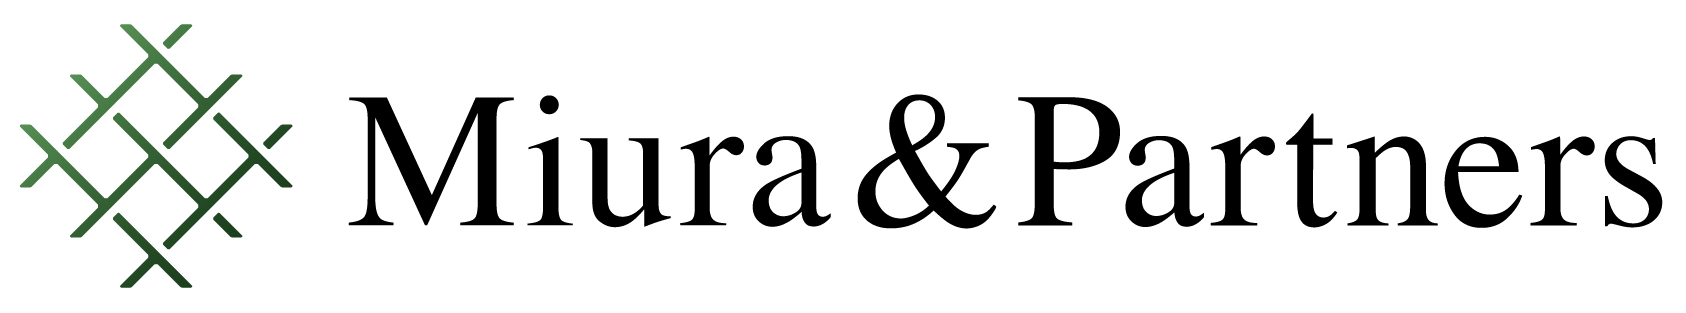 Miura & Partners  logo